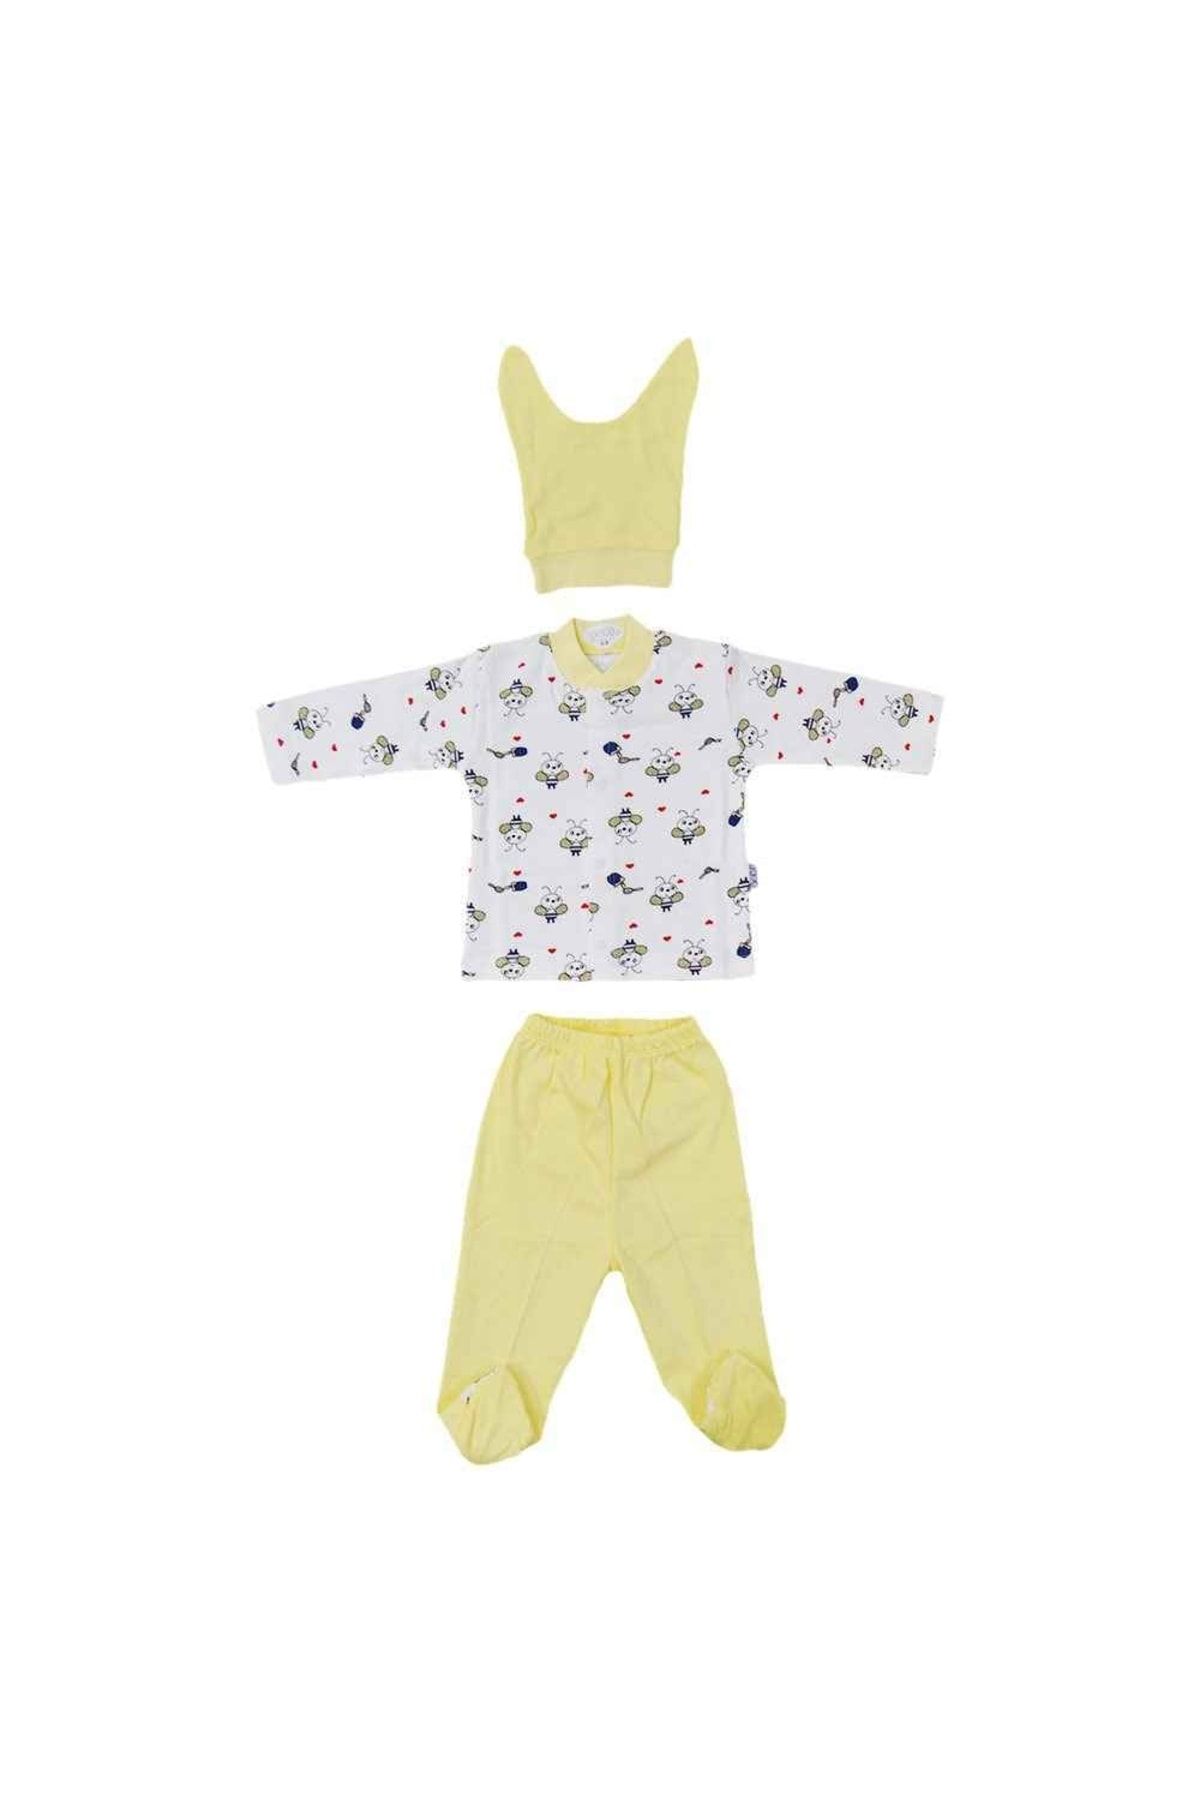 Sebi Bebe Arı Baskılı Pijama Takımı 0-3 Ay